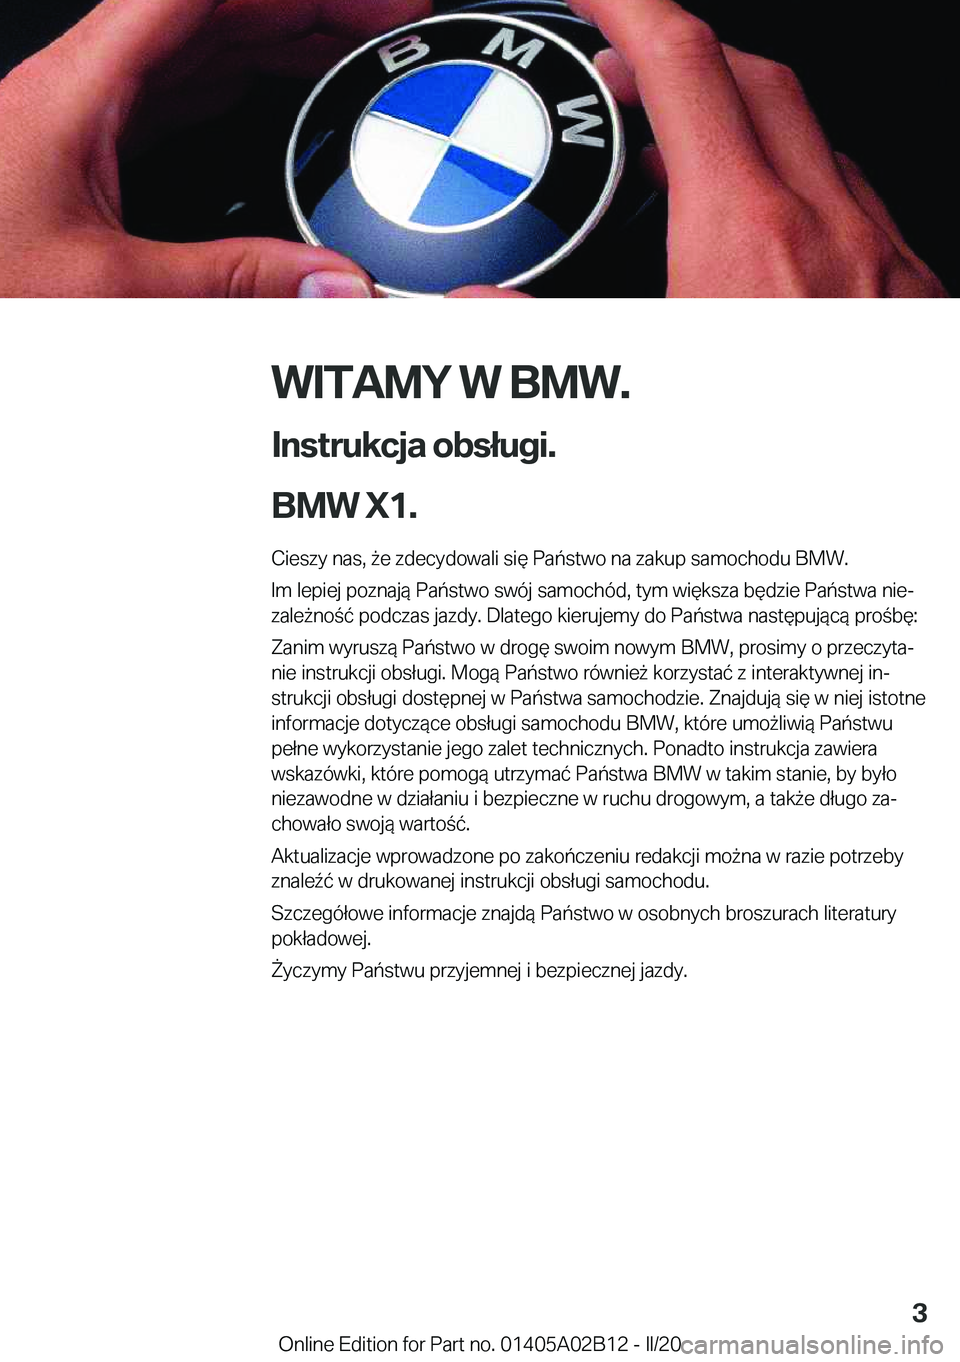 BMW X1 2020  Instrukcja obsługi (in Polish) �W�I�T�A�M�Y��W��B�M�W�.
�I�n�s�t�r�u�k�c�j�a��o�b�s�ł�u�g�i�.
�B�M�W��X�1�. �C�i�e�s�z�y��n�a�s�,�9�e��z�d�e�c�y�d�o�w�a�l�i��s�i�